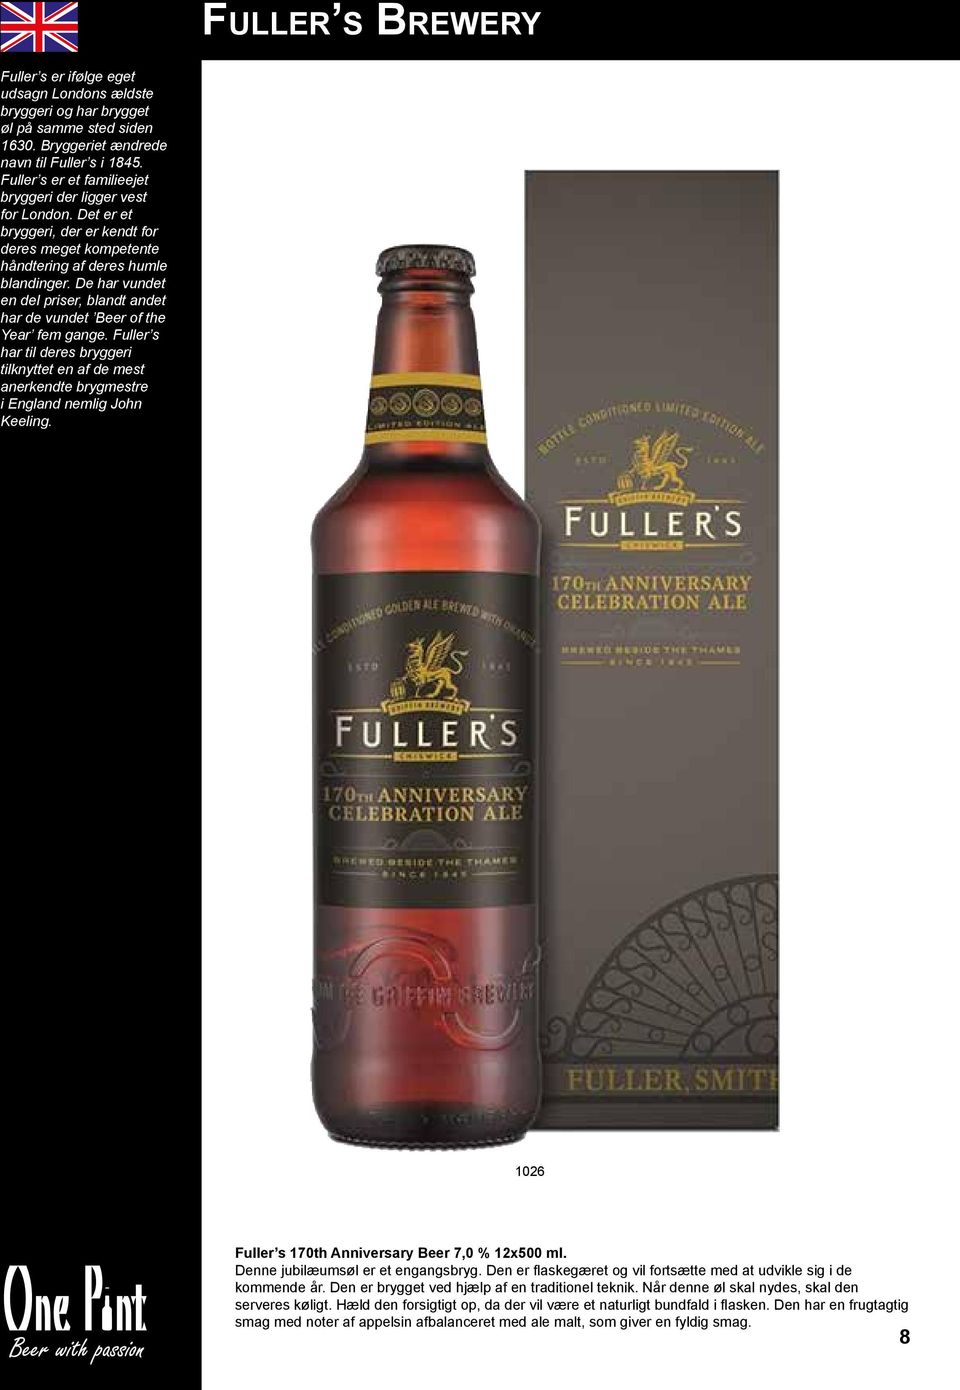 De har vundet en del priser, blandt andet har de vundet Beer of the Year fem gange. Fuller s har til deres bryggeri tilknyttet en af de mest anerkendte brygmestre i England nemlig John Keeling.